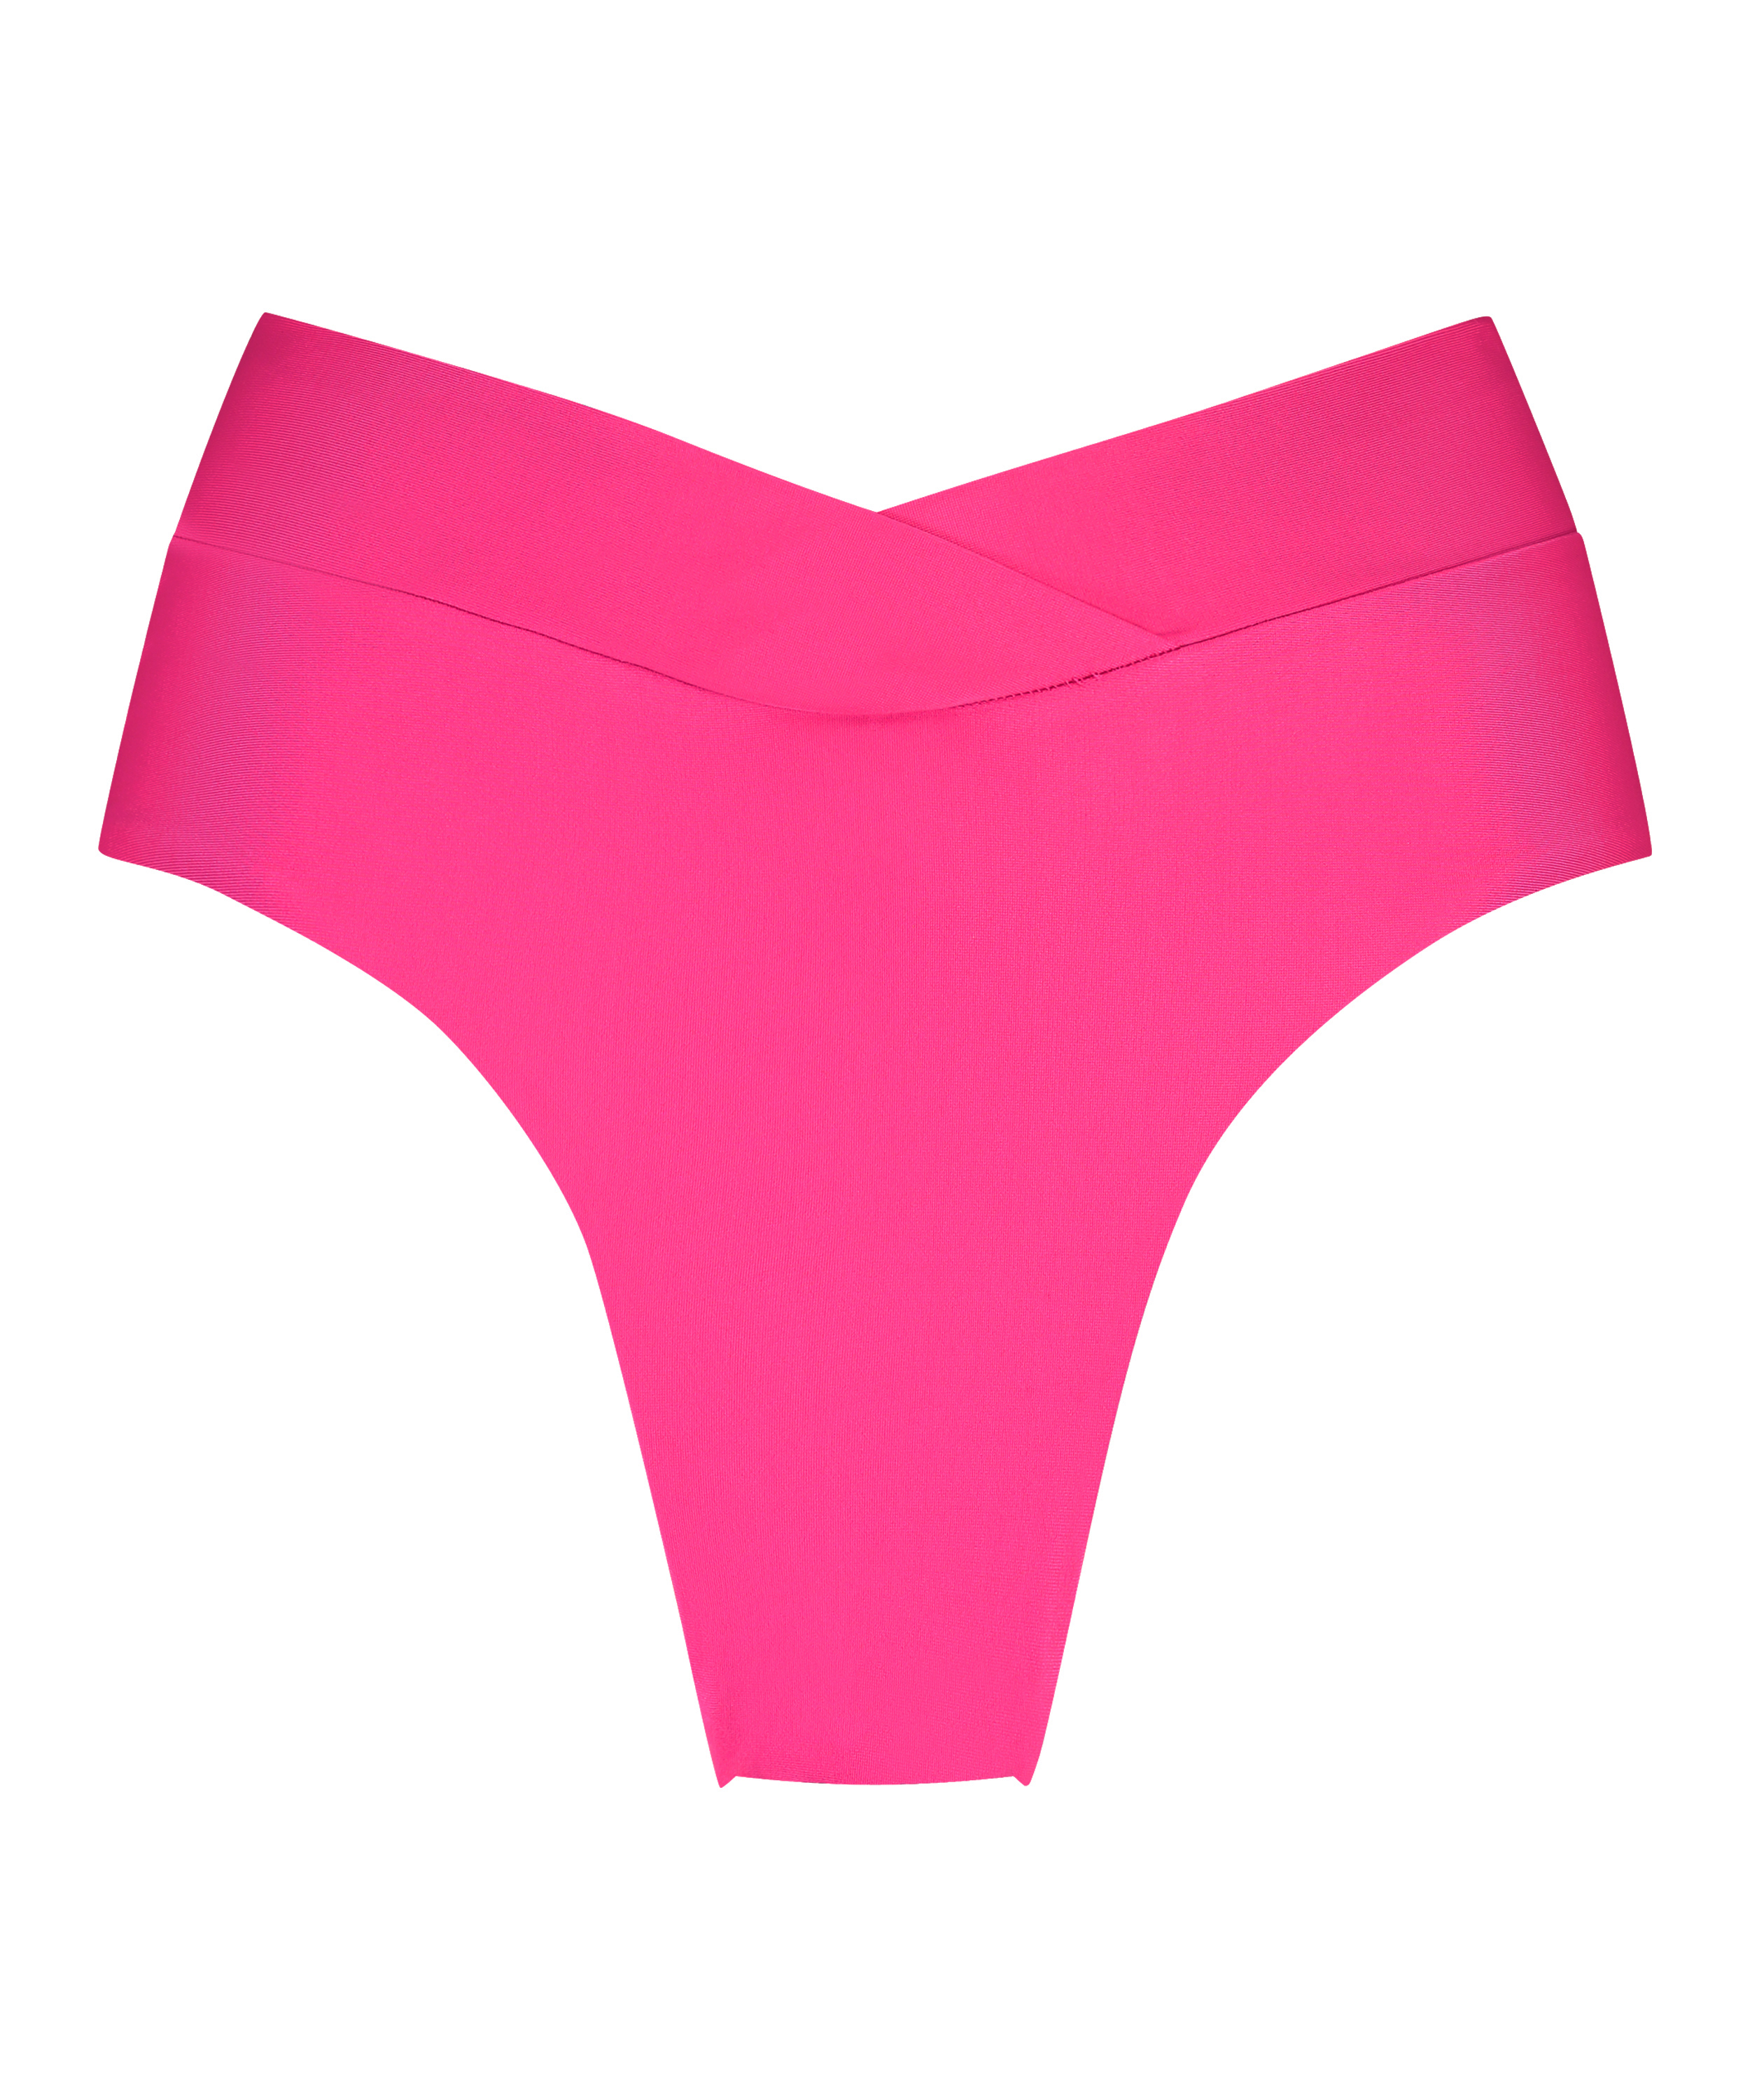 Naples Rio Bikini Bottoms, Pink, main